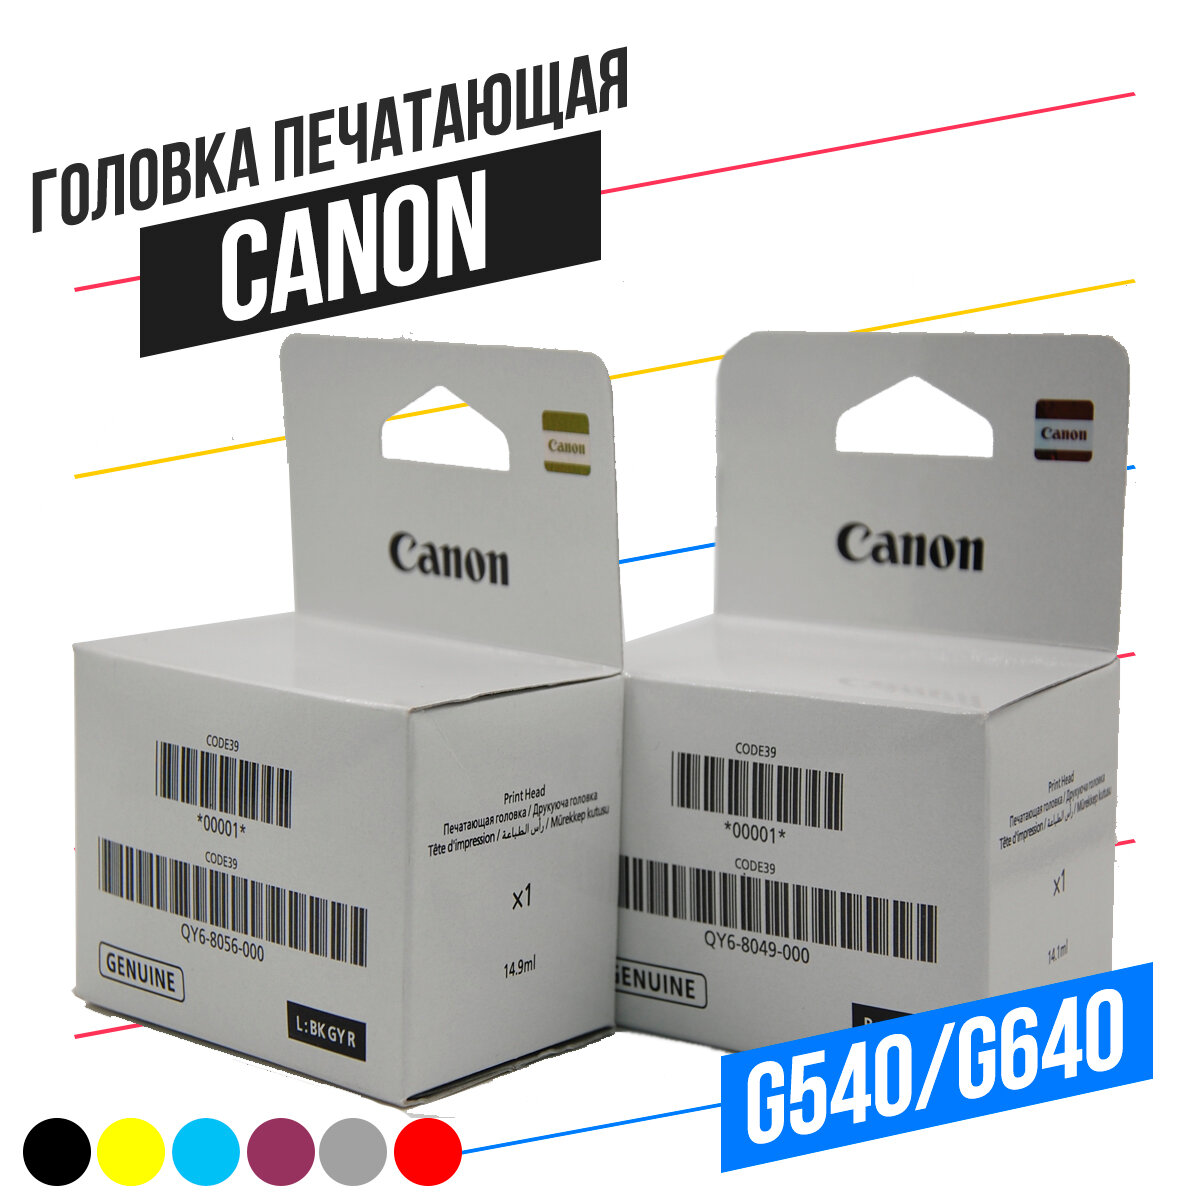 Комплект печатающих головок Canon QY6-8049/QY6-8056 для принтера Canon Pixma G540, G640